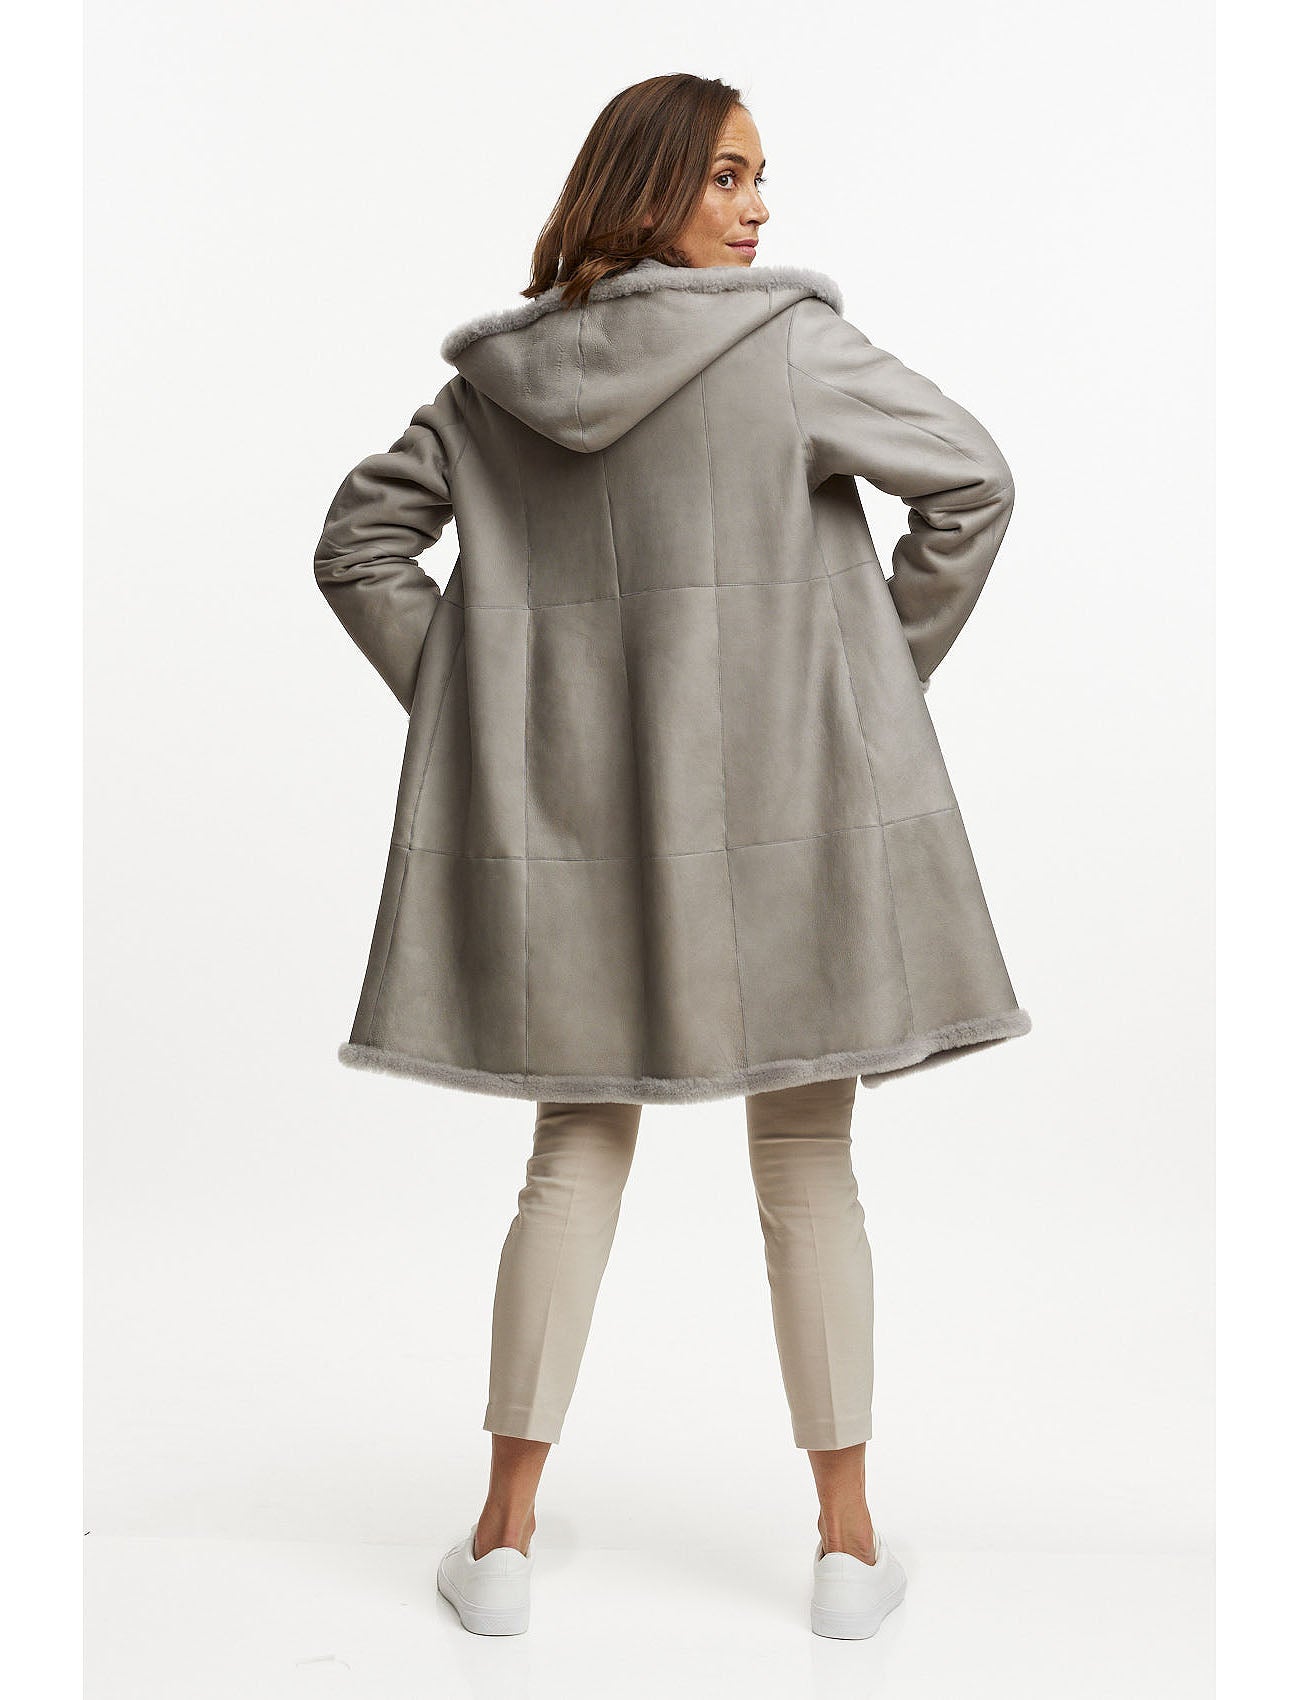 Merino lambskin jacket reversible 2in1 - light grey